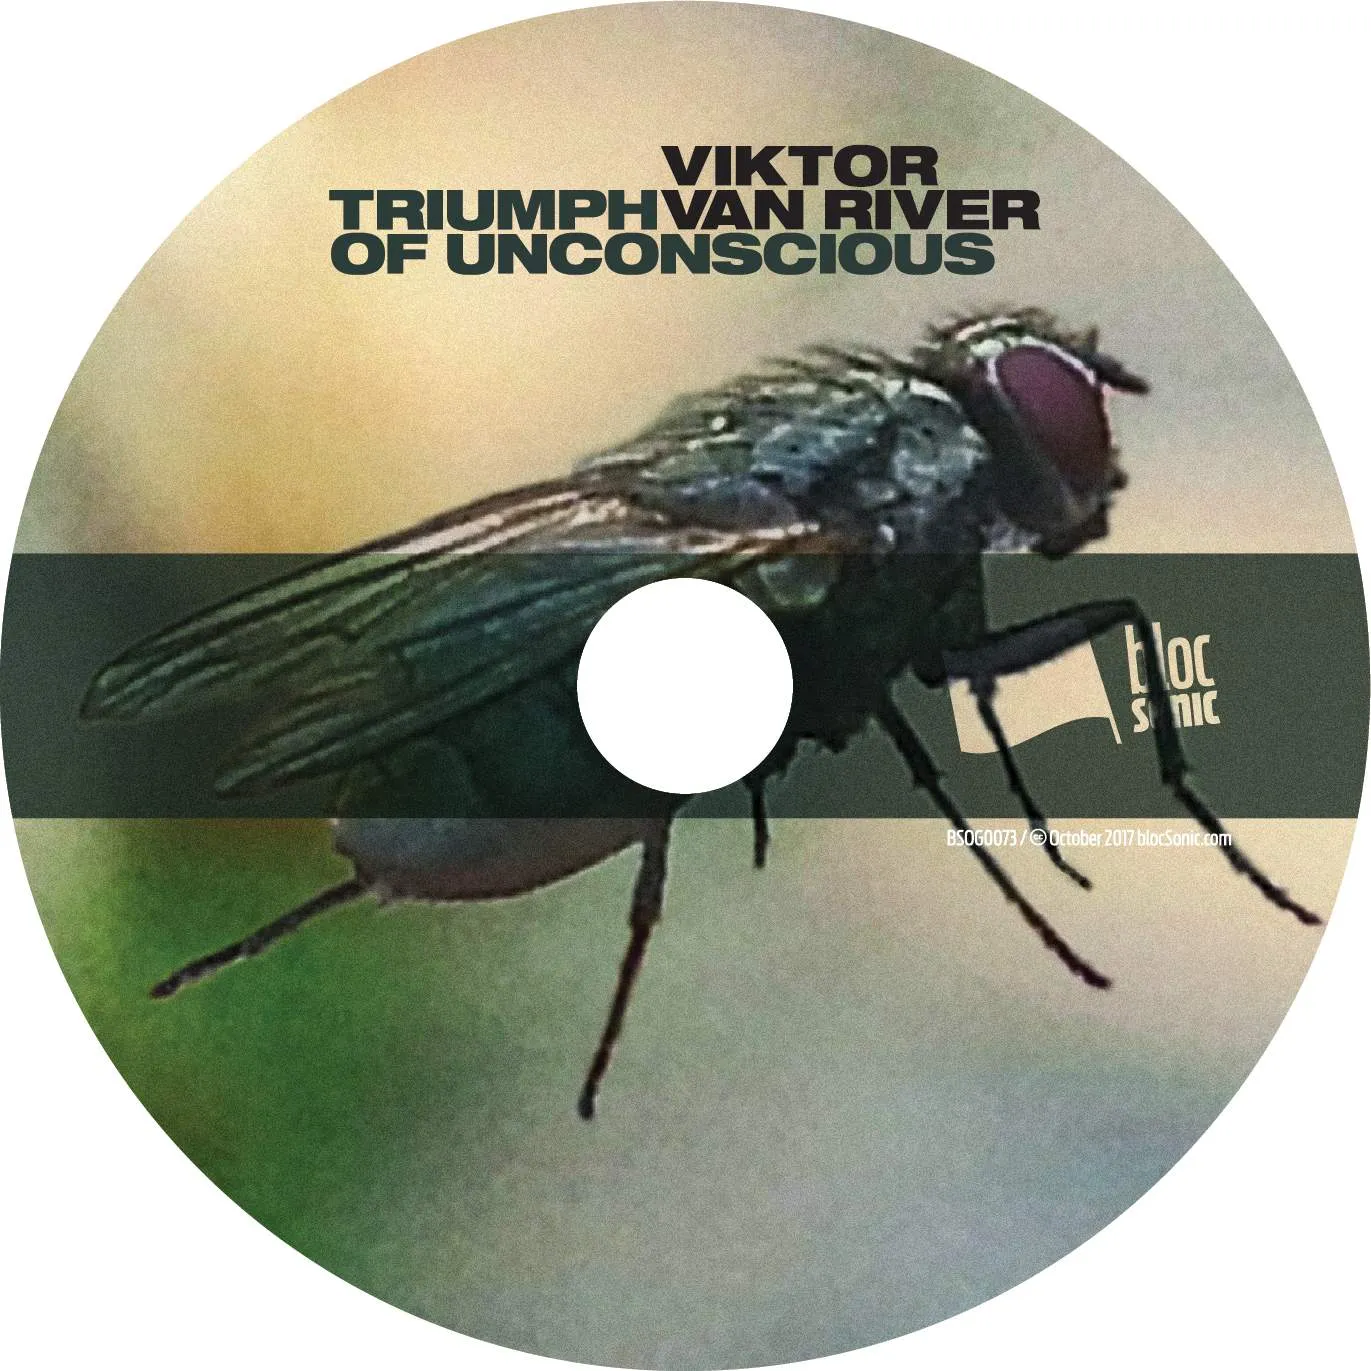 Album disc for “Triumph Of Unconscious” by Viktor Van River